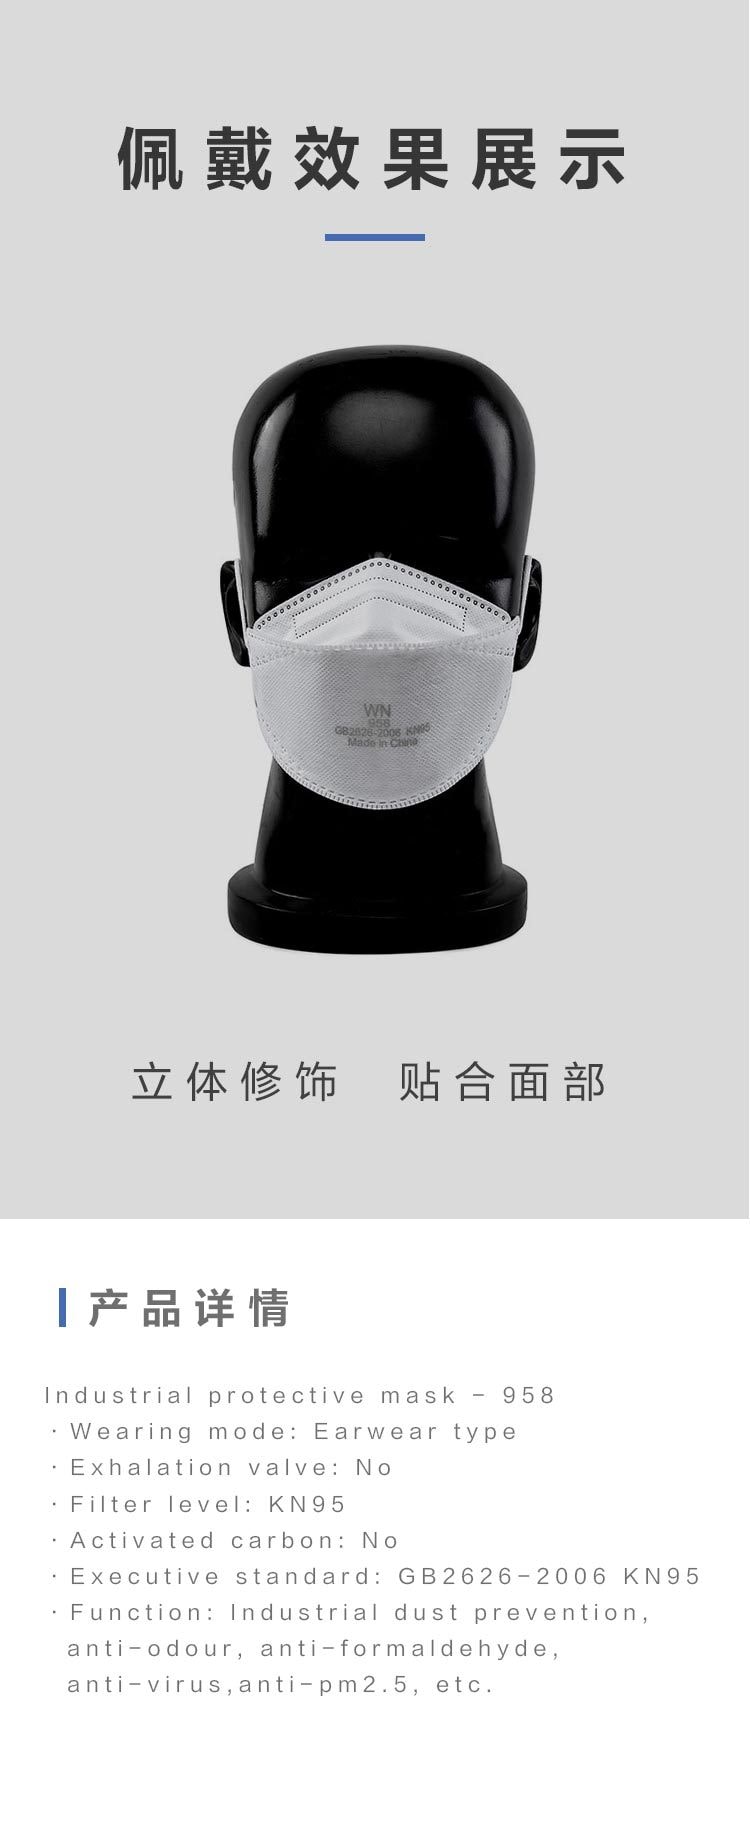 【美国现货】工业防护面罩-958 (每盒50个)白色 耳带式